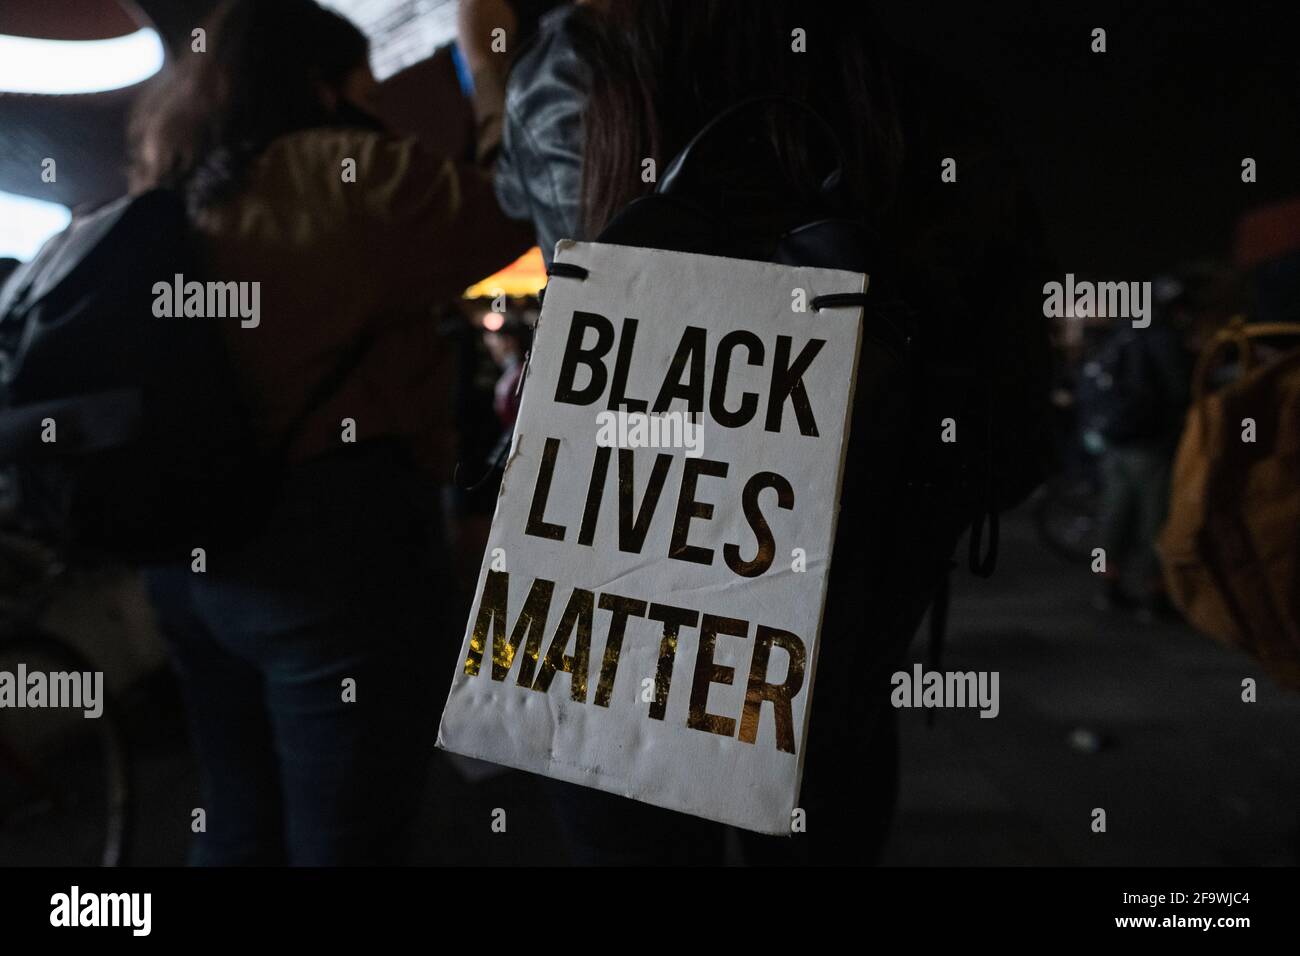 Brooklyn, New York, États-Unis 20 avril 2021. Le panneau Black Lives Matter est collé sur le sac à dos de la femme alors que les manifestants se rassemblent aux heures du Barclays Center après qu'un jury ait trouvé l'ancien policier de Minneapolis Derek Chauvin coupable du meurtre de George Floyd en 2020. Banque D'Images